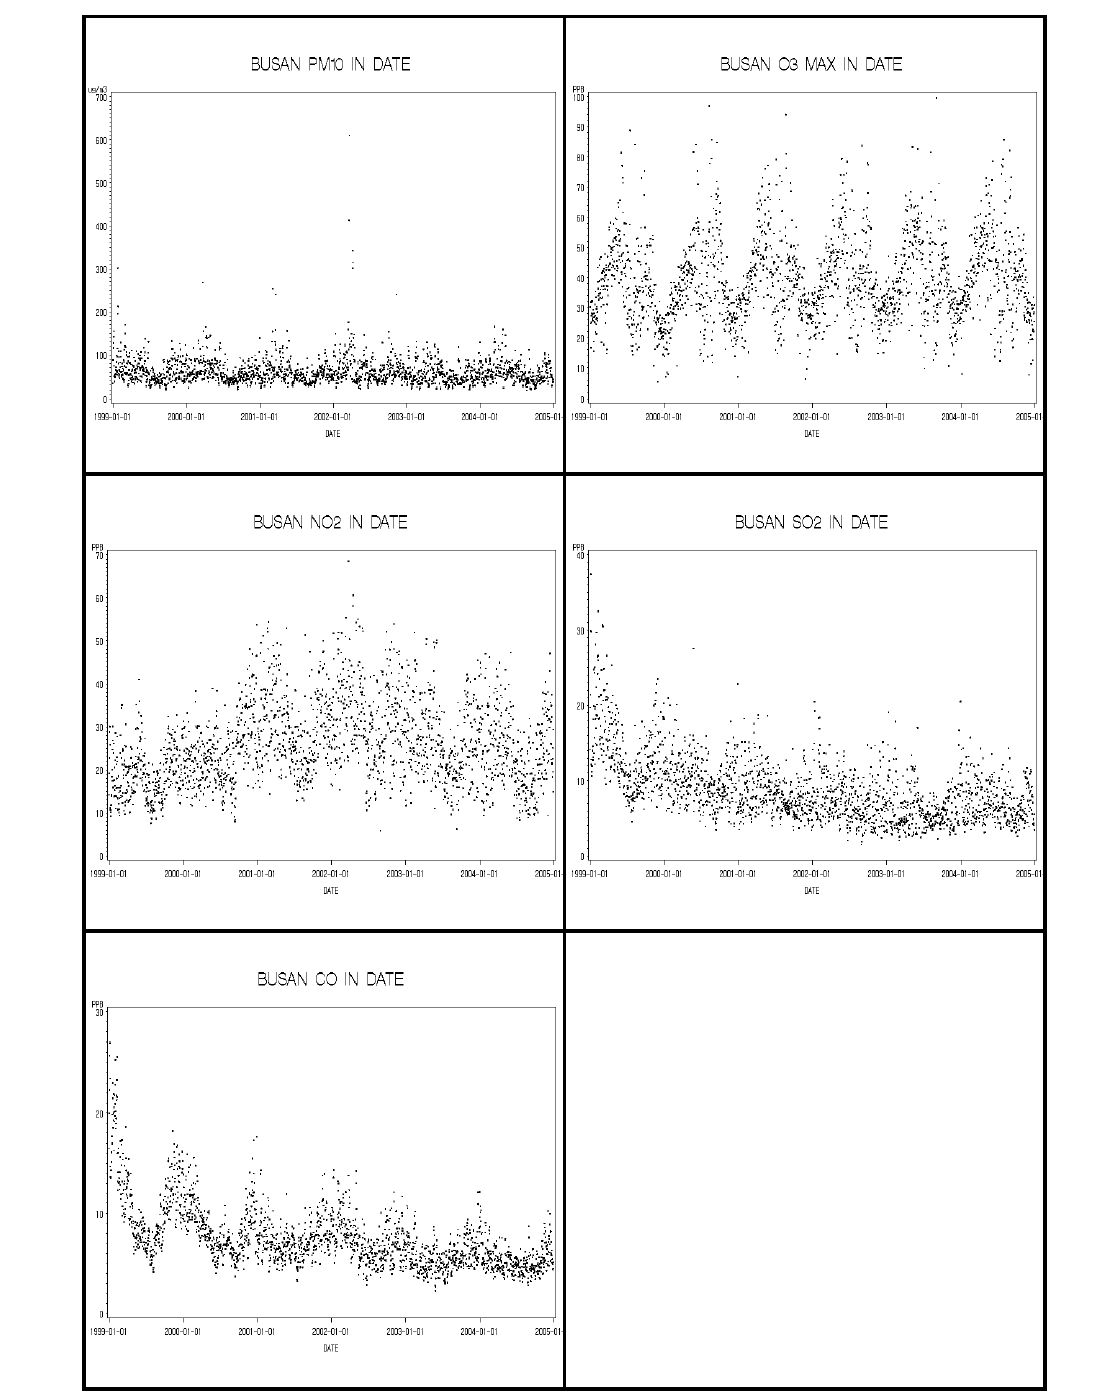 부산광역시 대기오염물질의 일별 농도(1999-2004년)